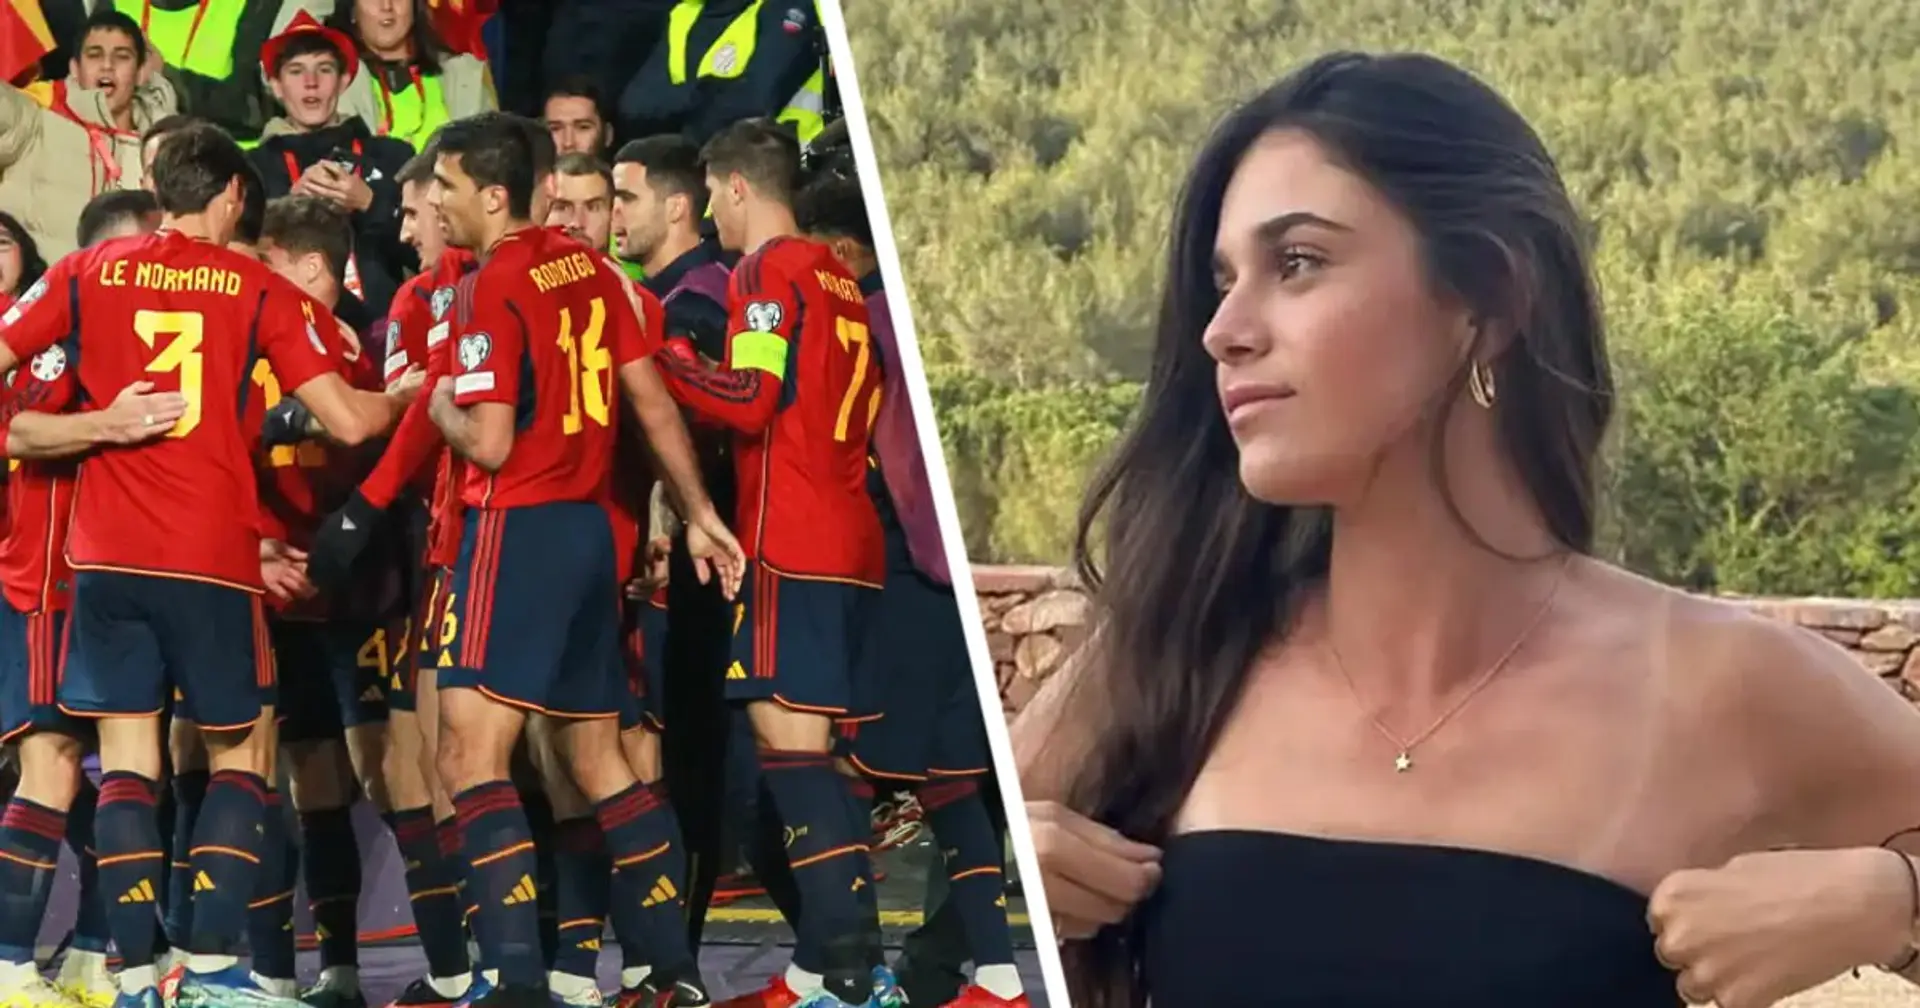 Die Tochter von Luis Enrique hat sich von Ferran Torres getrennt und ist nun mit dem Verteidiger von Real Sociedad zusammen: Beide spielen für die spanische Nationalmannschaft